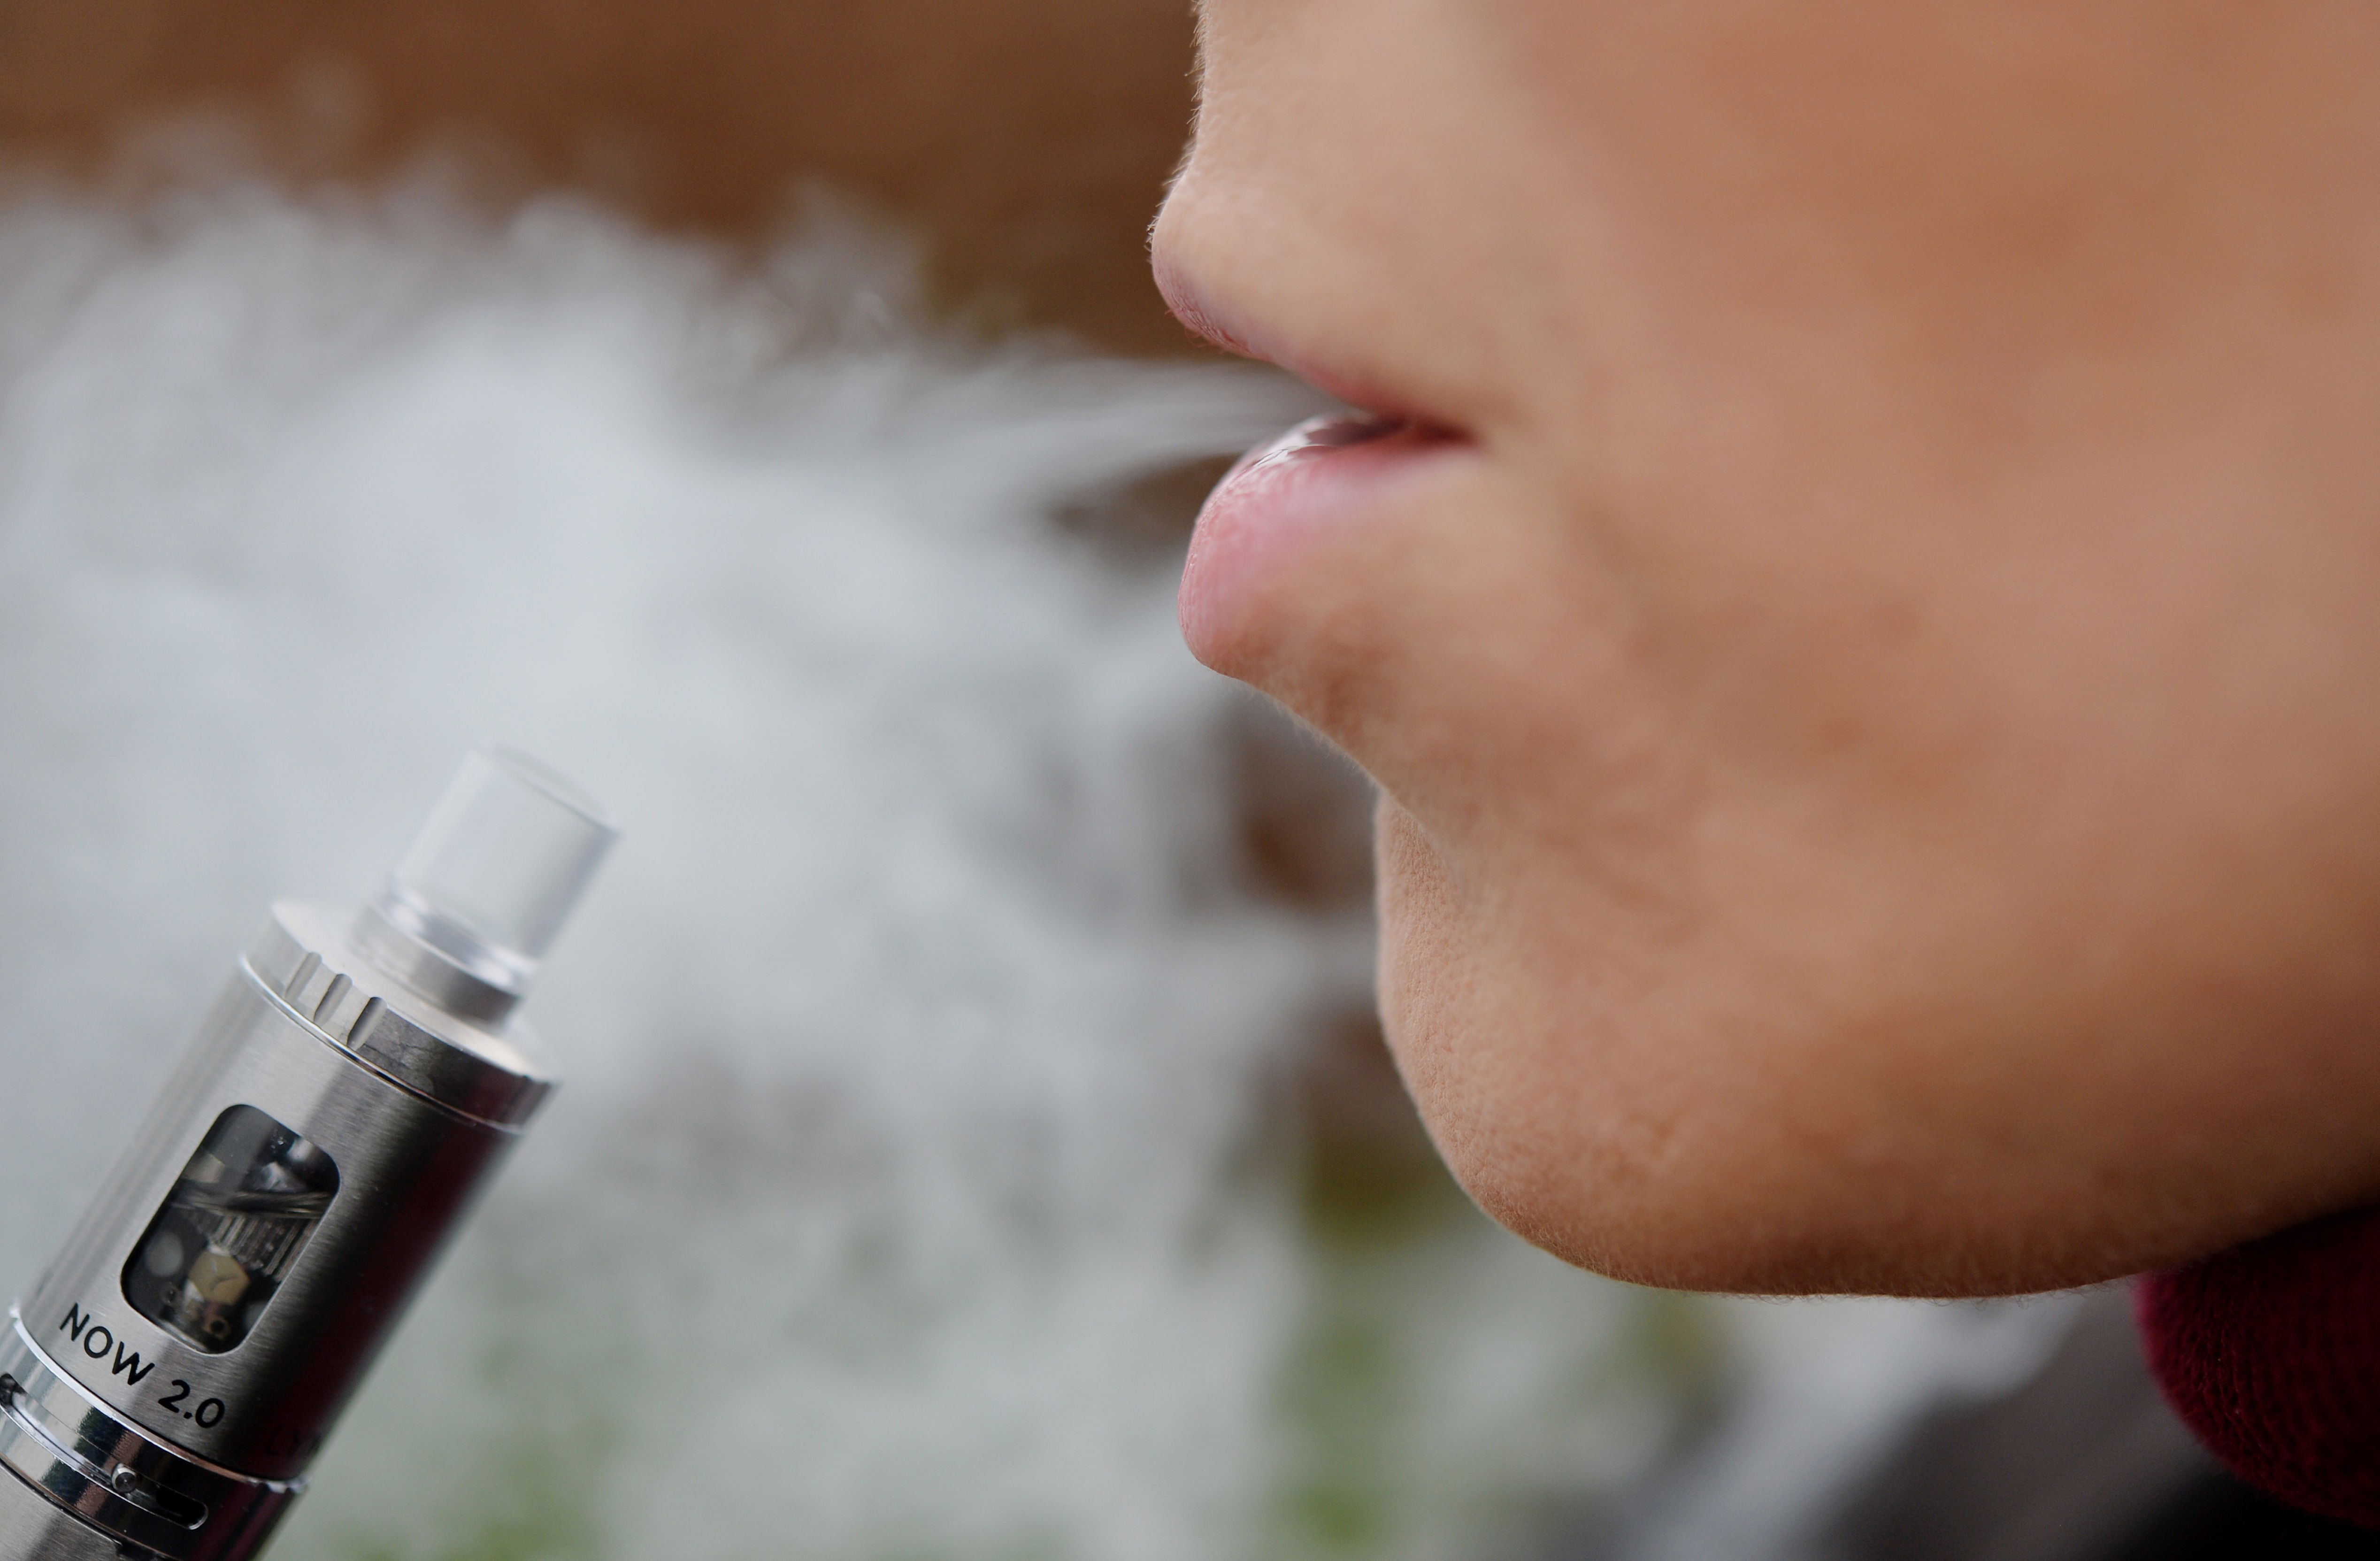 Einstiegsdroge in Nikotinsucht: Mehr Heranwachsende konsumieren E-Zigaretten  